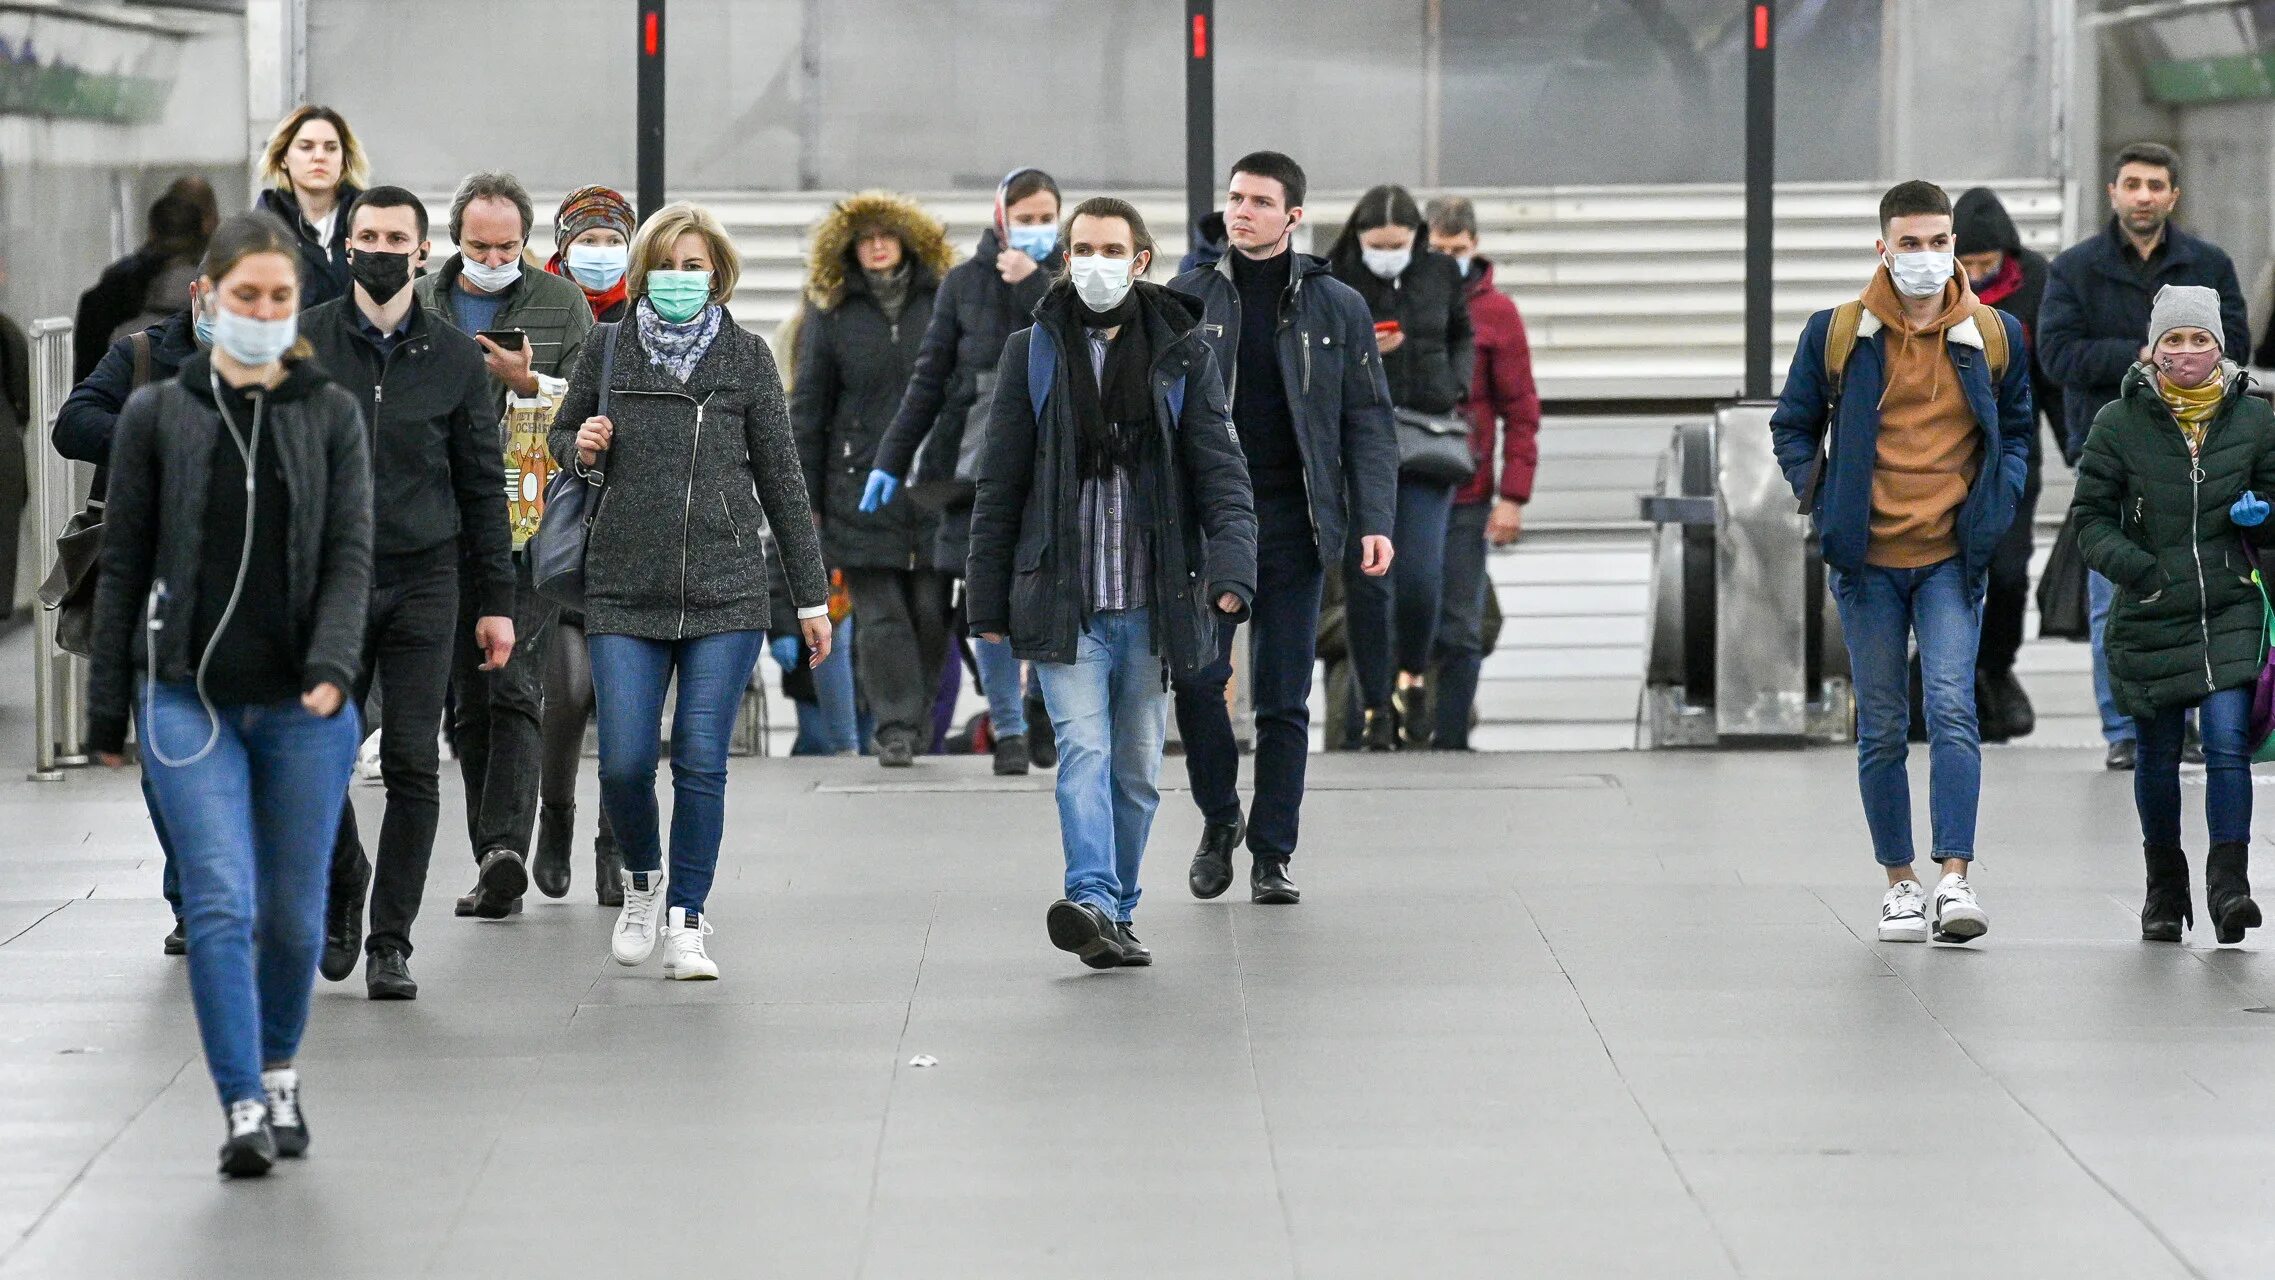 Одежда москвичей. Коронавирус люди на улице. Фотография очереди пацанов. Люди в масках прохожие толпа жизнь.